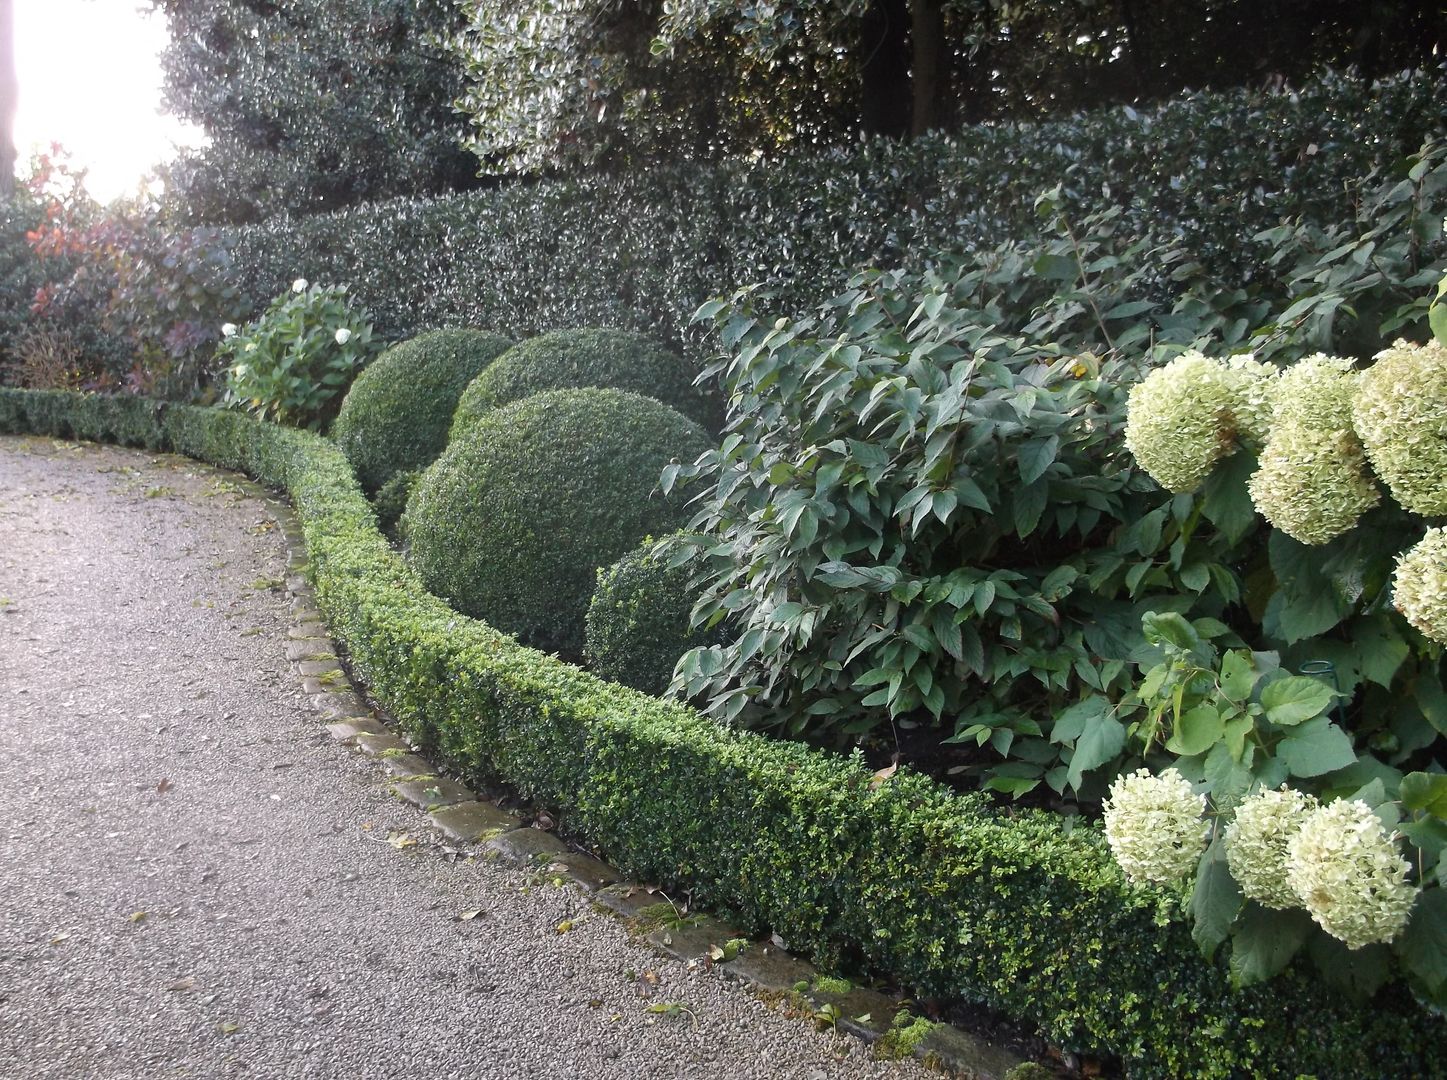 A Bowdon Garden Charlesworth Design حديقة hydrangea,frontgarden,bowdon,bowdongarden,classicgarden,boxballs,topiary